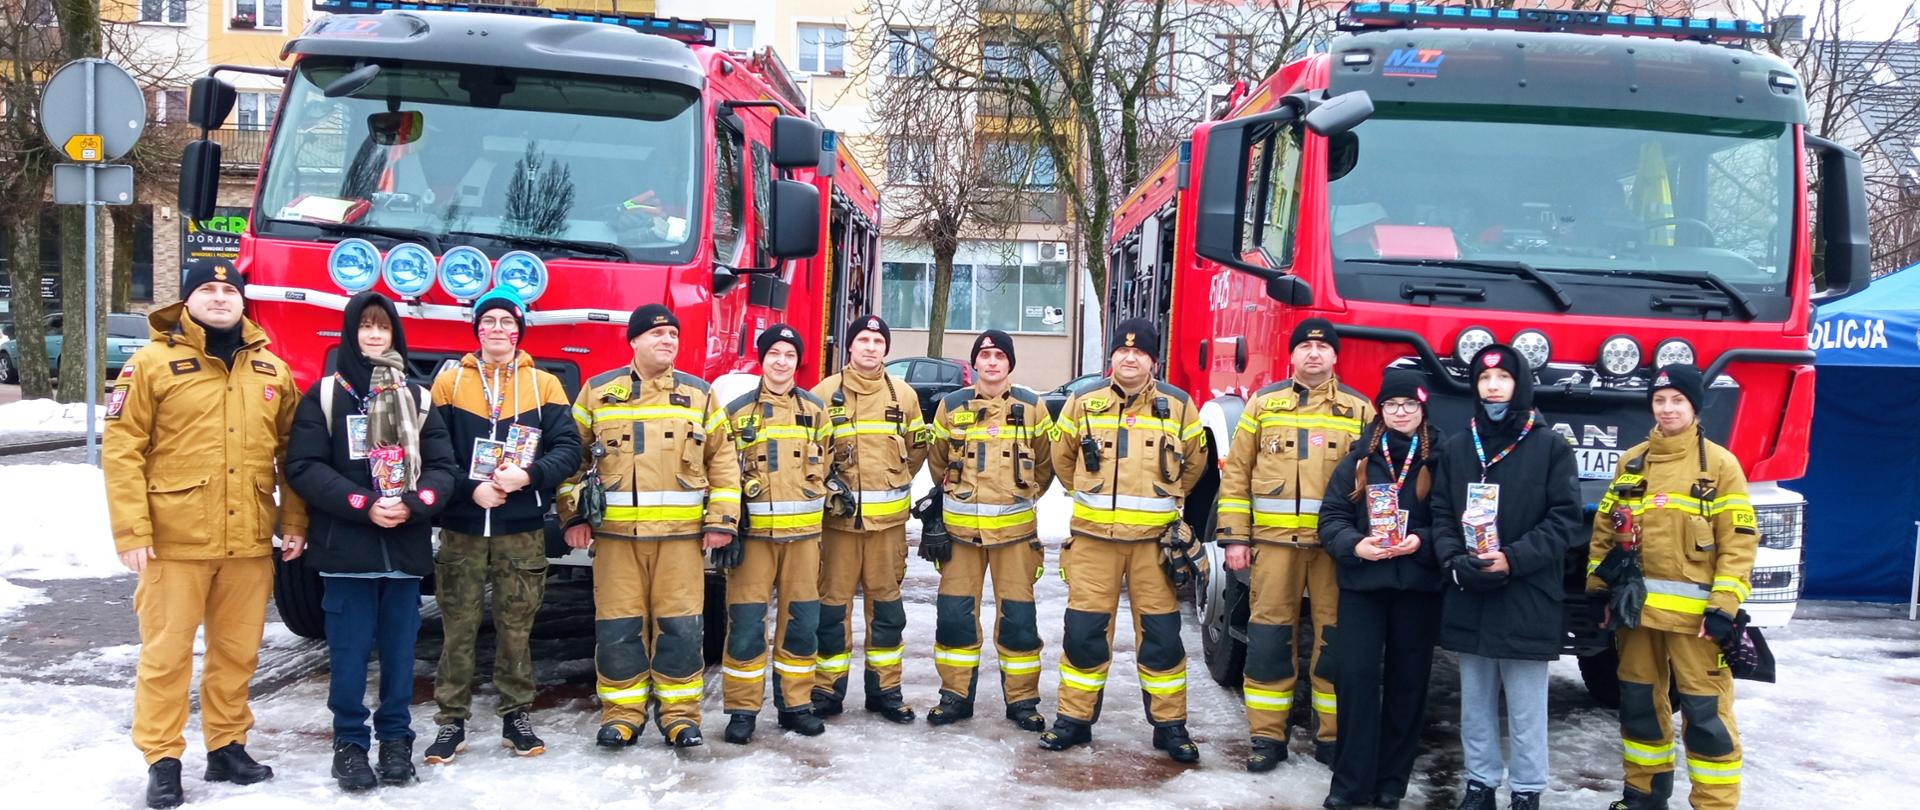 Zdjęcie przedstawia strażaków Komendy Powiatowej Państwowej Straży Pożarnej w Gołdapi, którzy wspólnie z wolontariuszami Wielkiej Orkiestry Świątecznej Pomocy uczestniczą w 32. Finale na Placu Zwycięstwa w Gołdapi. W tle widać dwa pojazdy pożarnicze. Niektóre osoby ujęte na obrazie, posiadają na swojej odzieży naklejone serce Wielkiej Orkiestry Świątecznej Pomocy